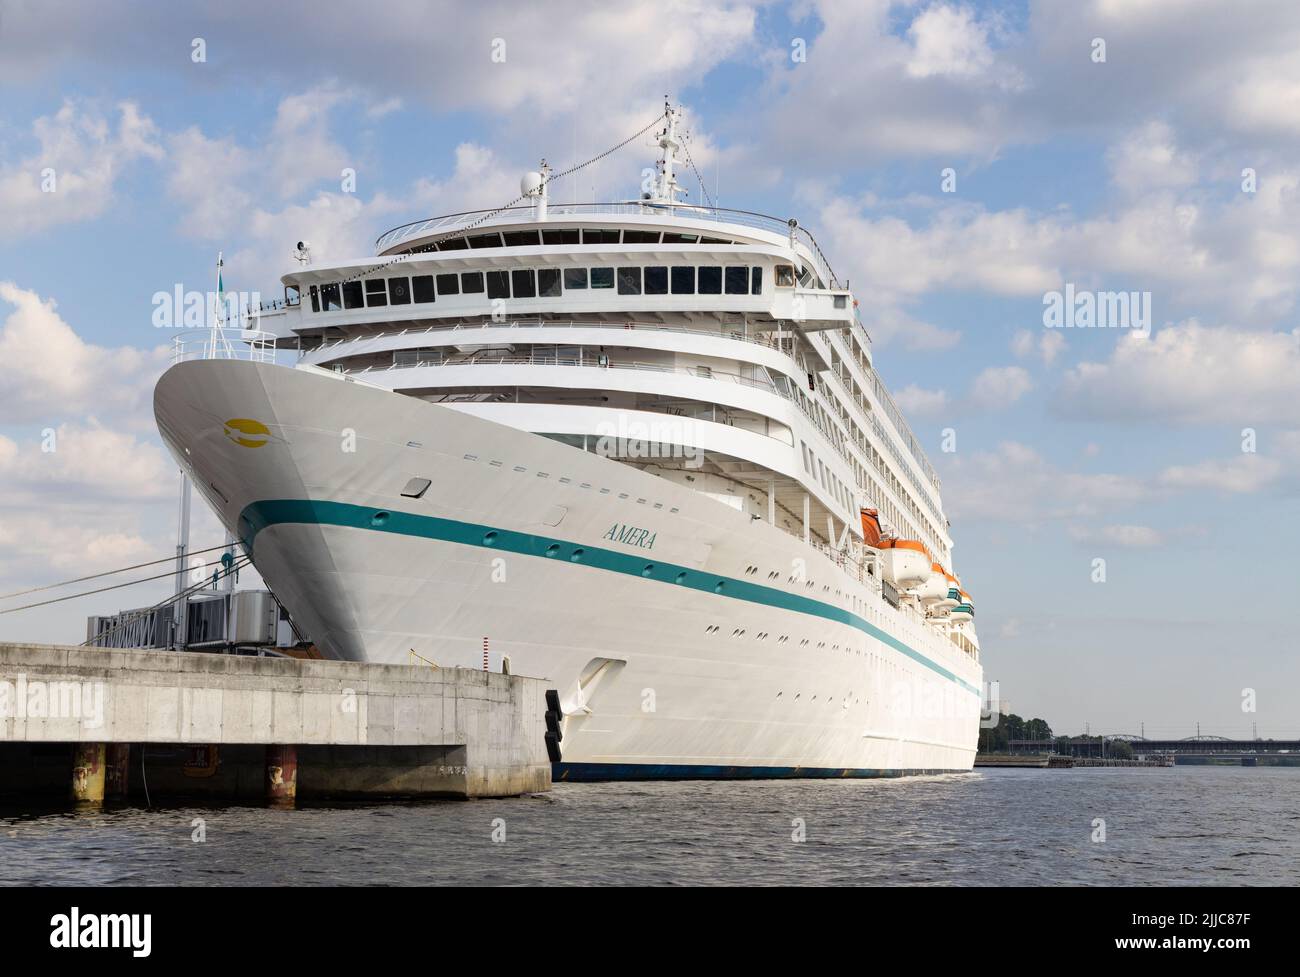 Crociera Baltica; nave da crociera MS Amera della linea di crociera Phoenix Reisen ormeggiata nel porto di riga, riga Lettonia Foto Stock